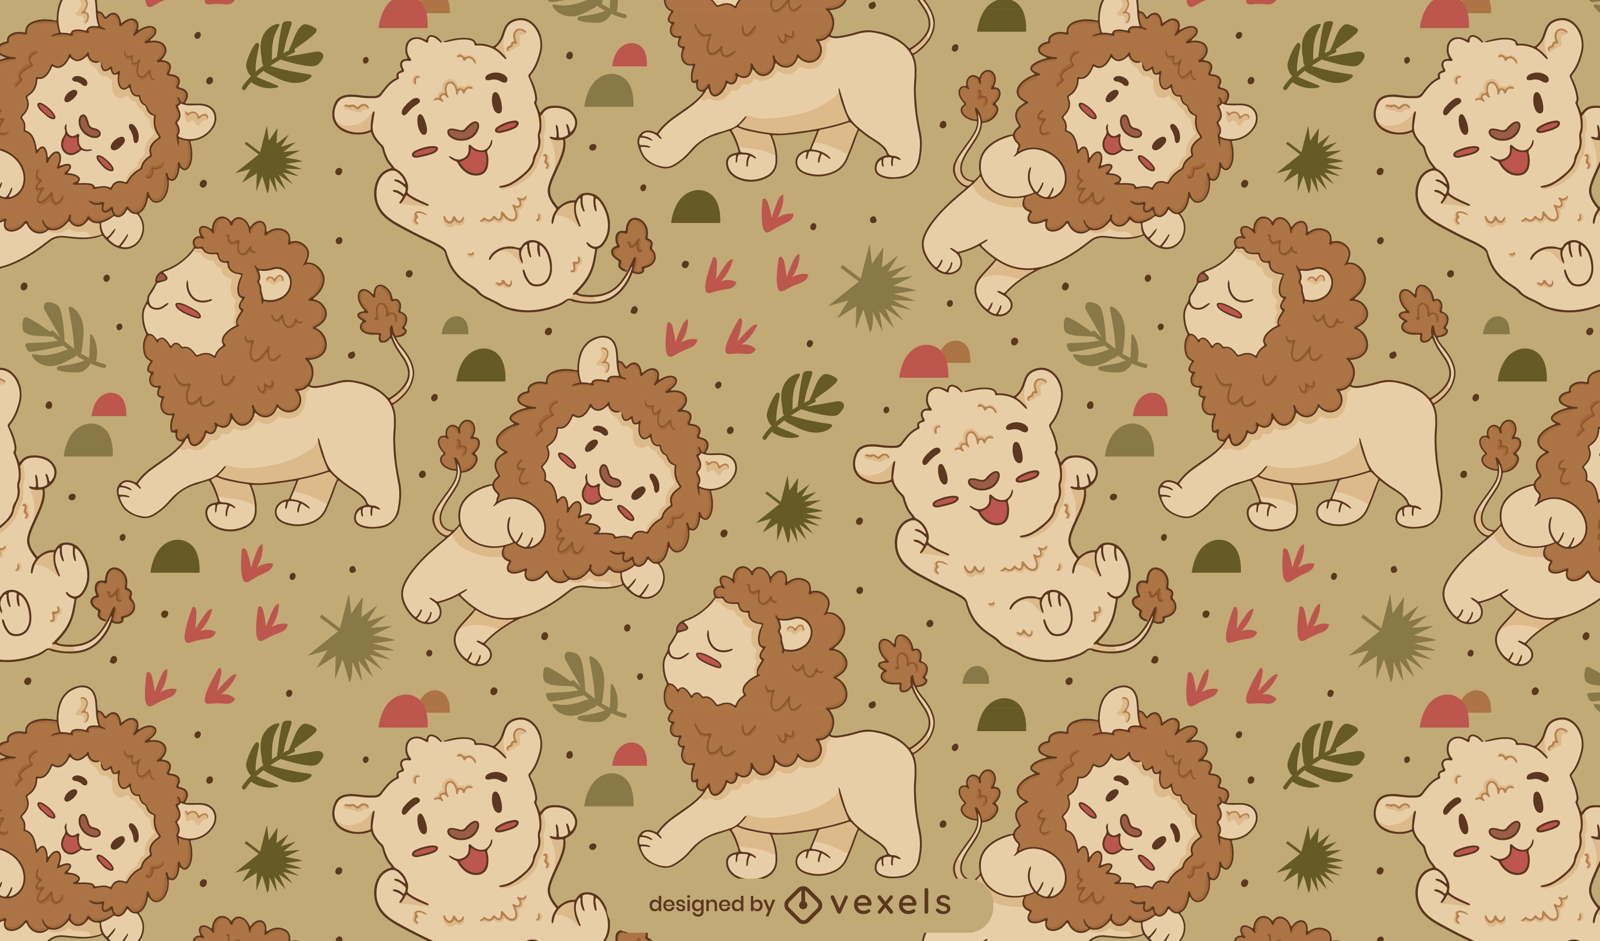 Adorable bebé diseño de patrón de leones y tigres